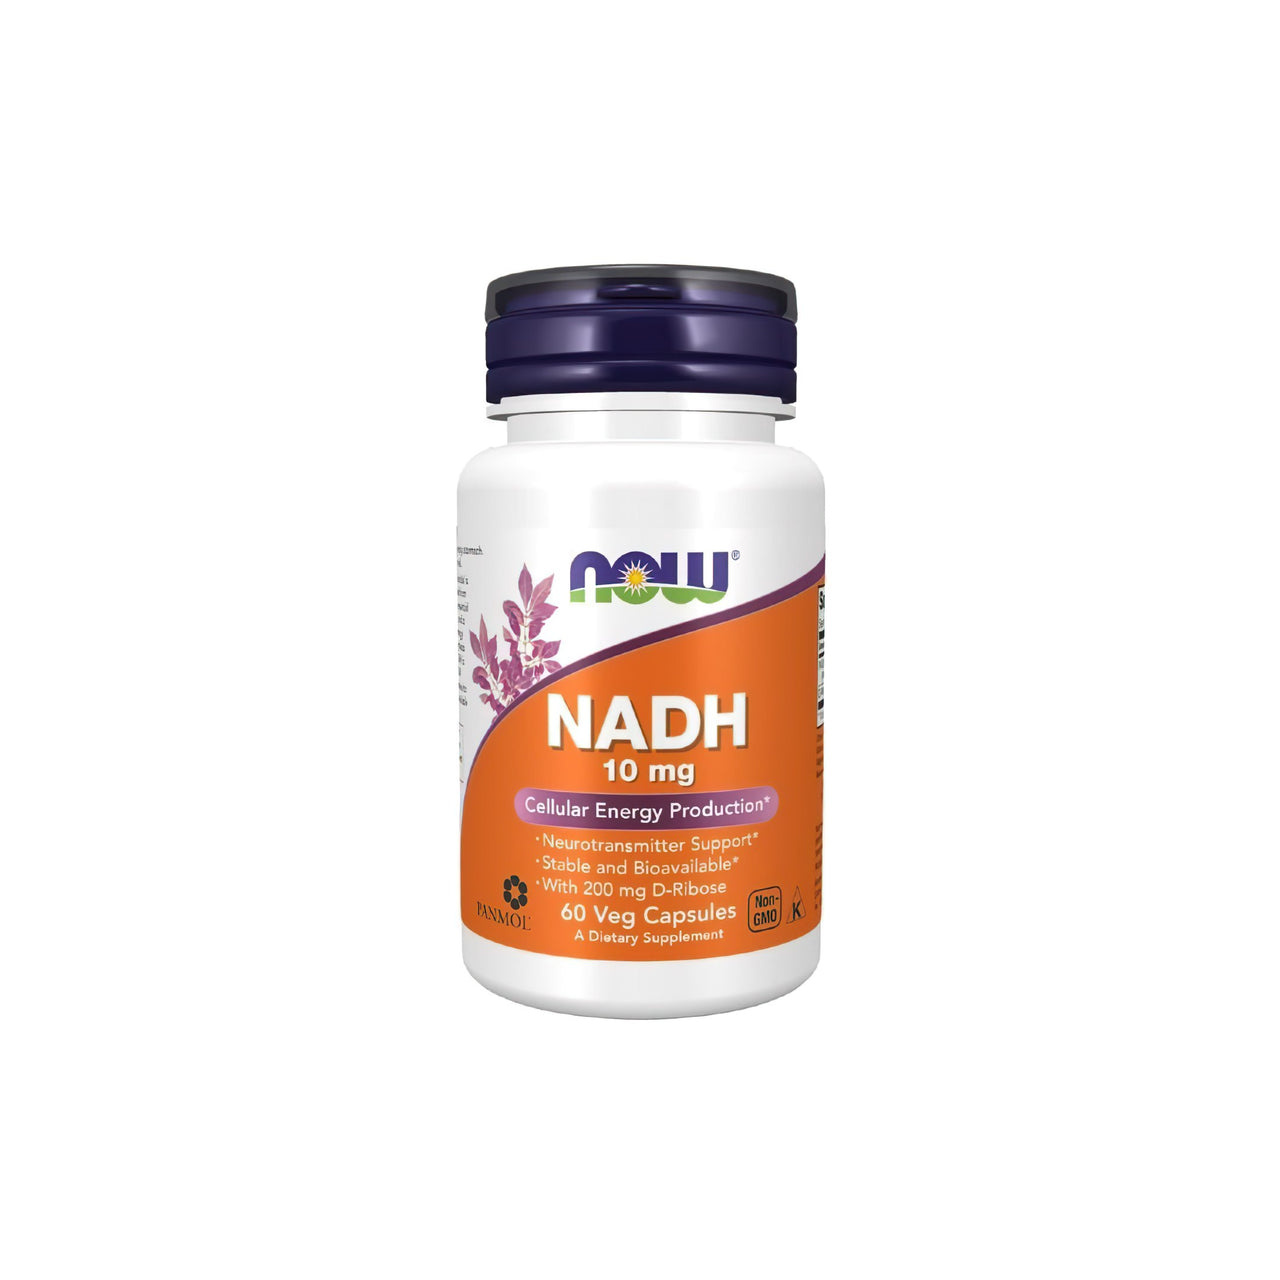 Now Foods NADH 10 mg 60 Cápsulas Vegetales son un suplemento natural que puede combatir eficazmente el cansancio y la fatiga. Estas cápsulas estimulan la producción de energía en el organismo, lo que se traduce en un aumento de los niveles de energía y un mayor bienestar general.